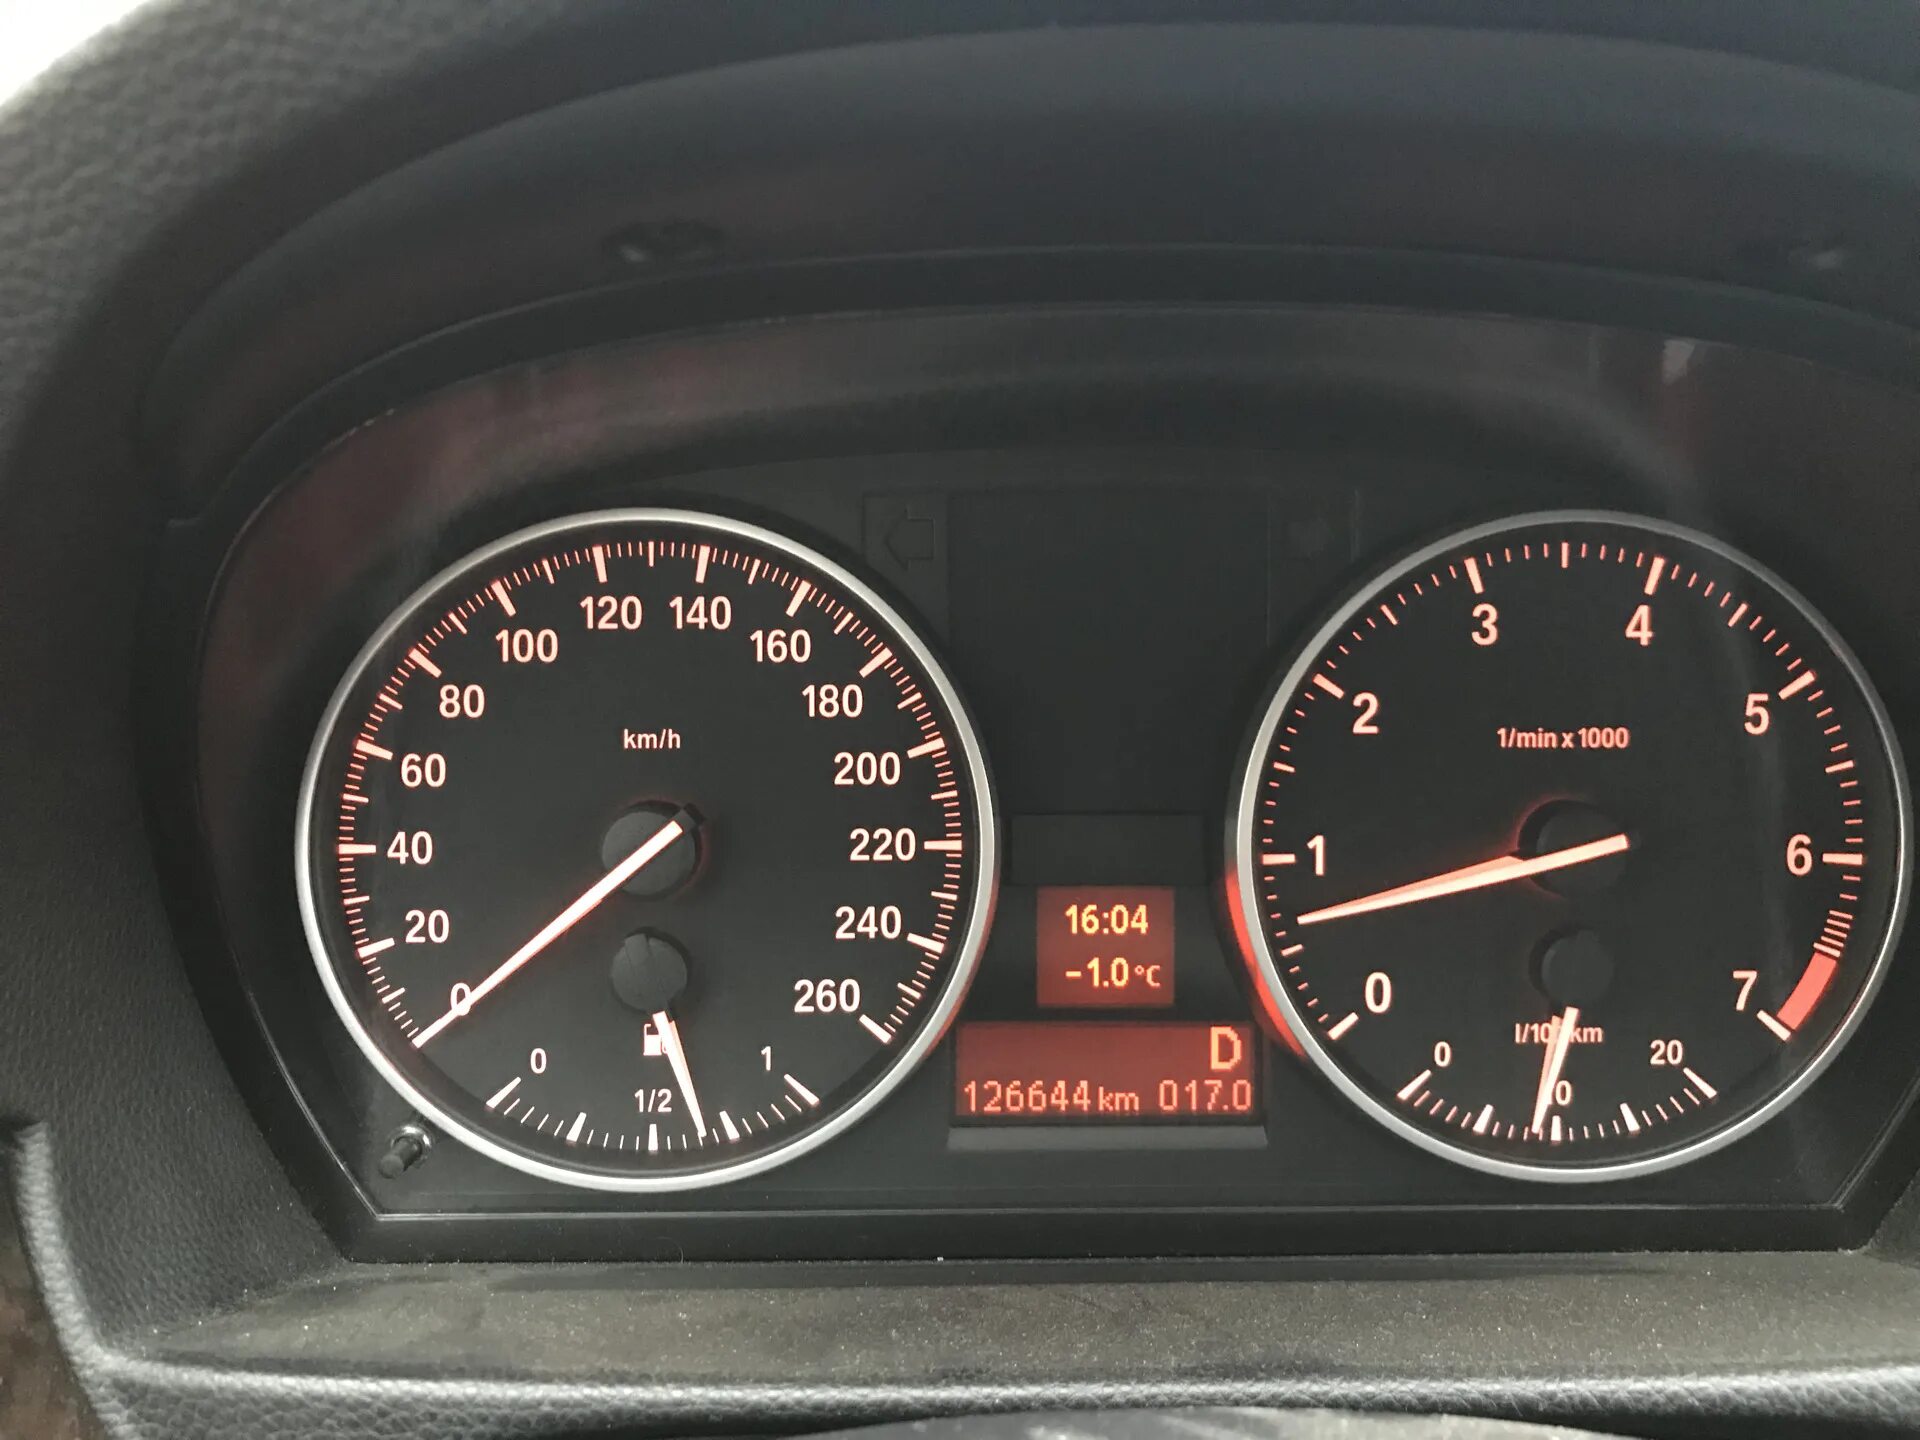 Температура масла на приборке BMW f22. W140 7.3 480 км на приборке. БМВ 630 температура масла 110. Температура масла бмв